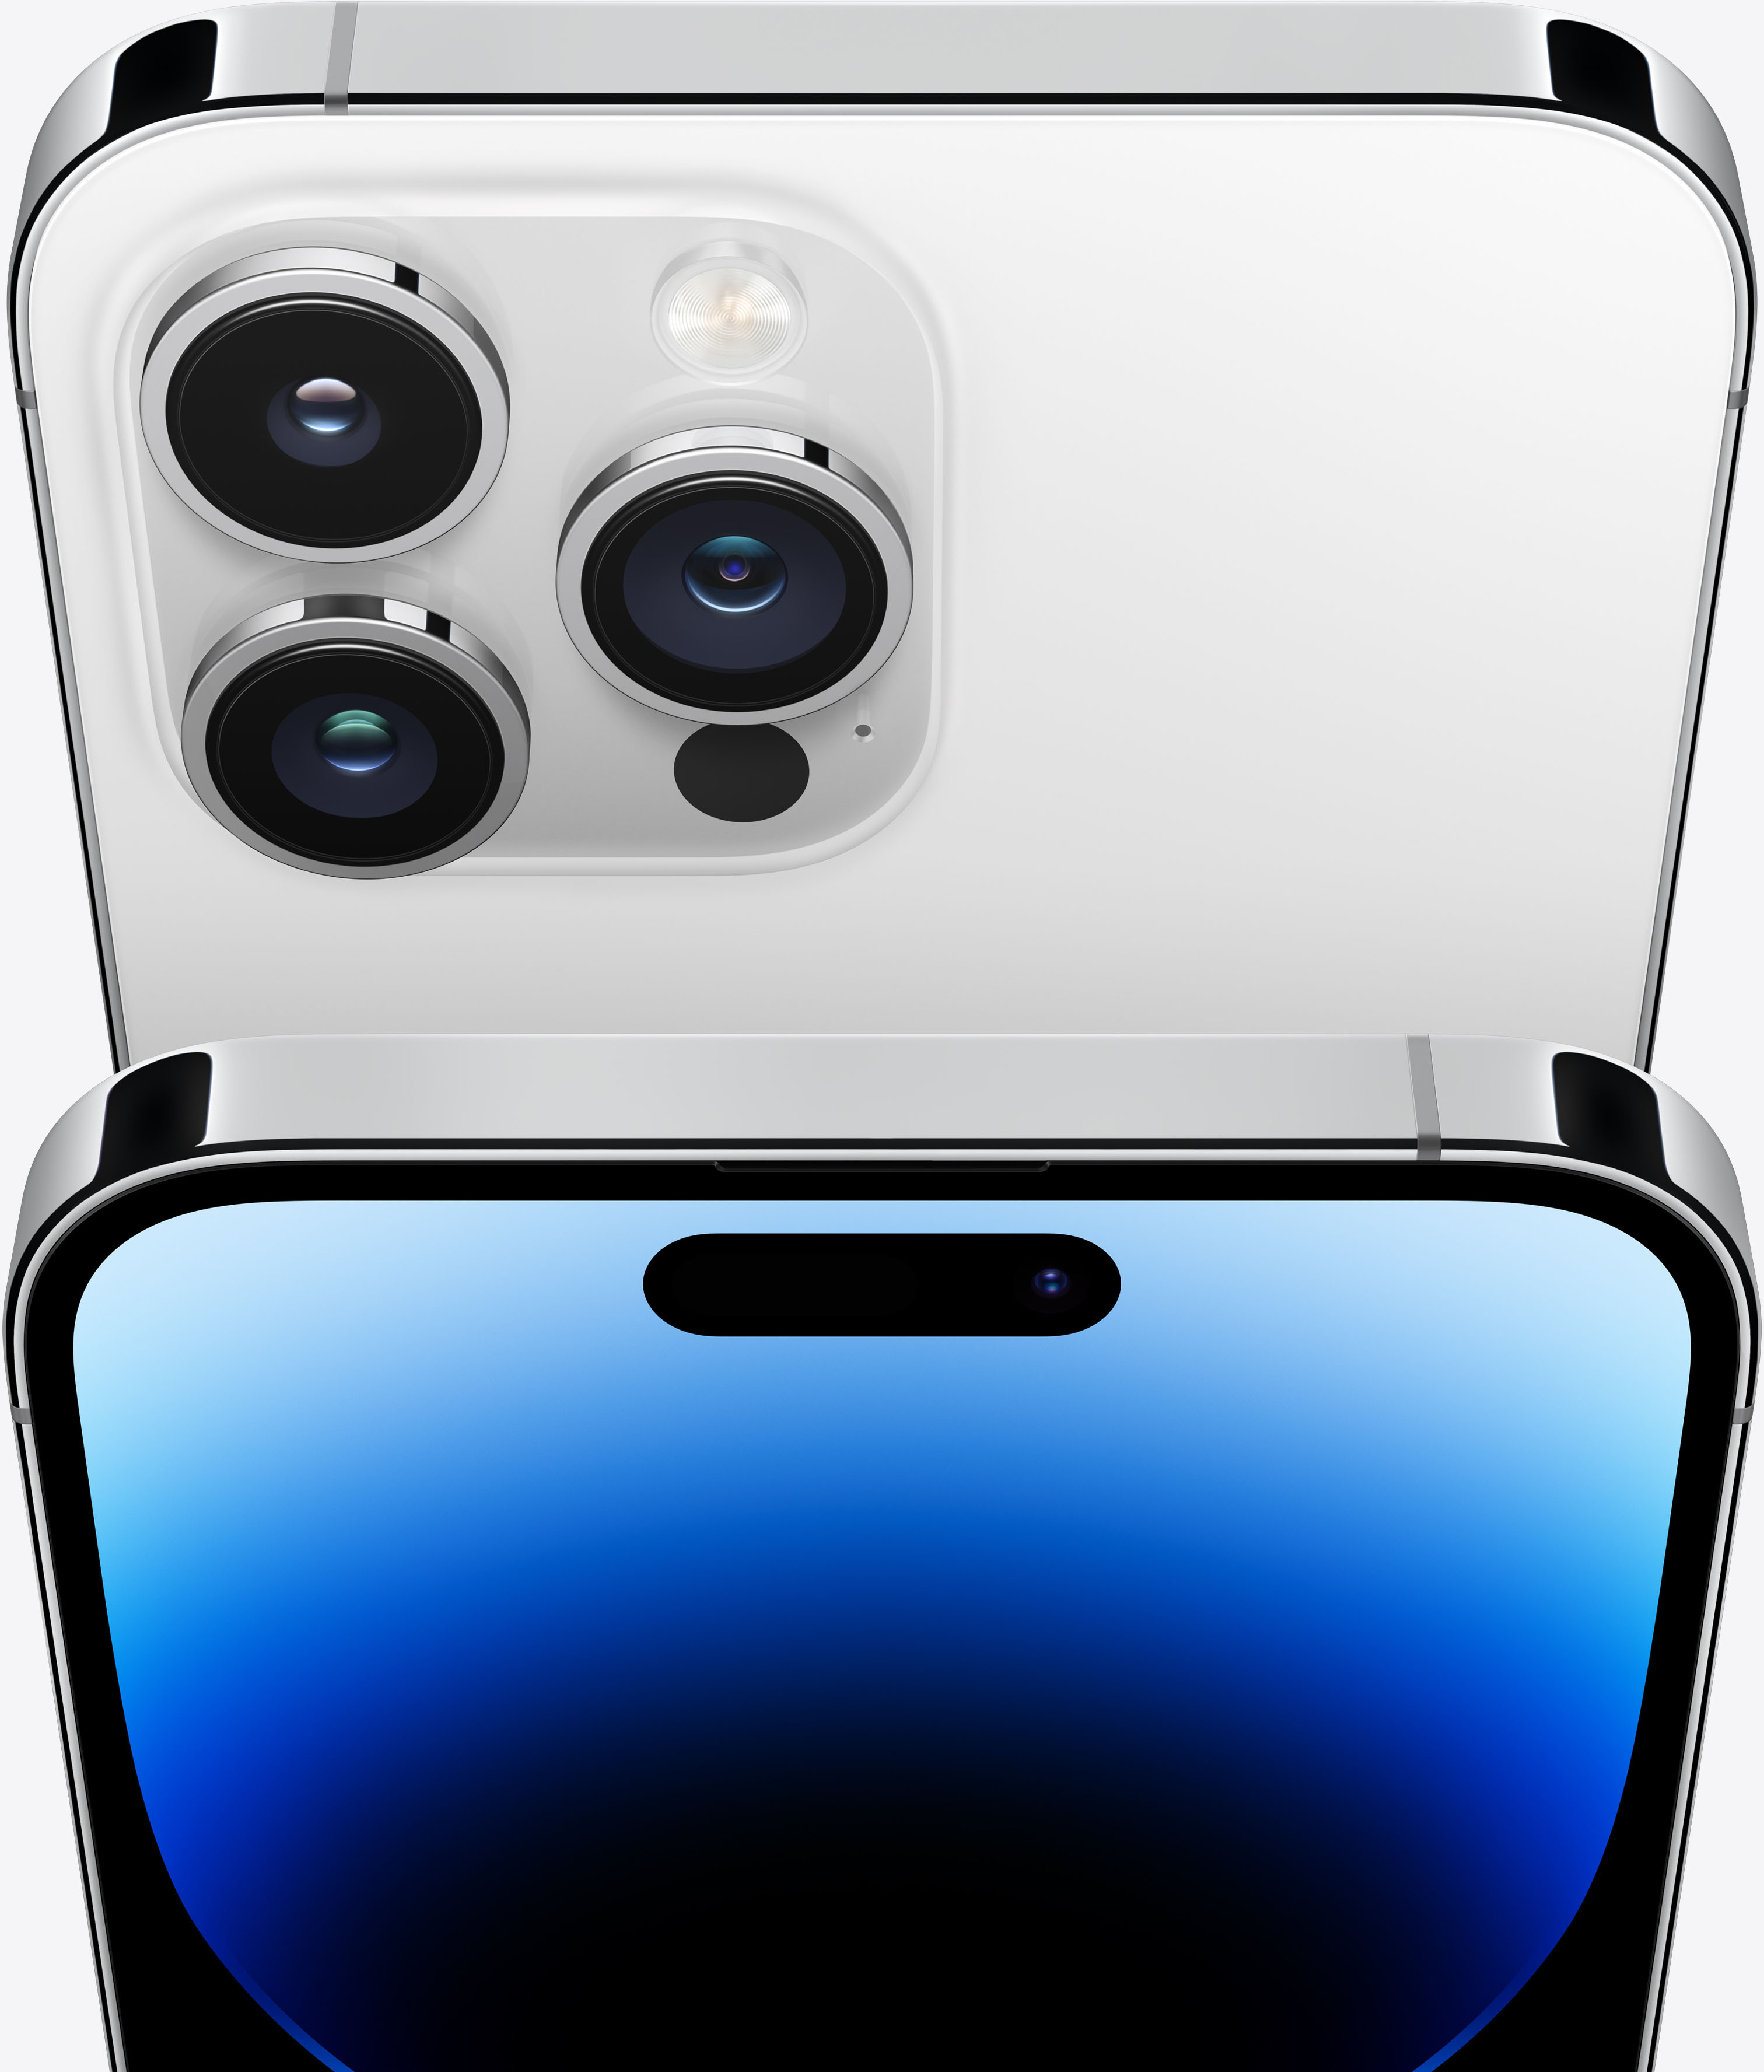 Apple iPhone 14 Pro 256GB Silver (Verizon) MQ0X3LL/A - Best Buy